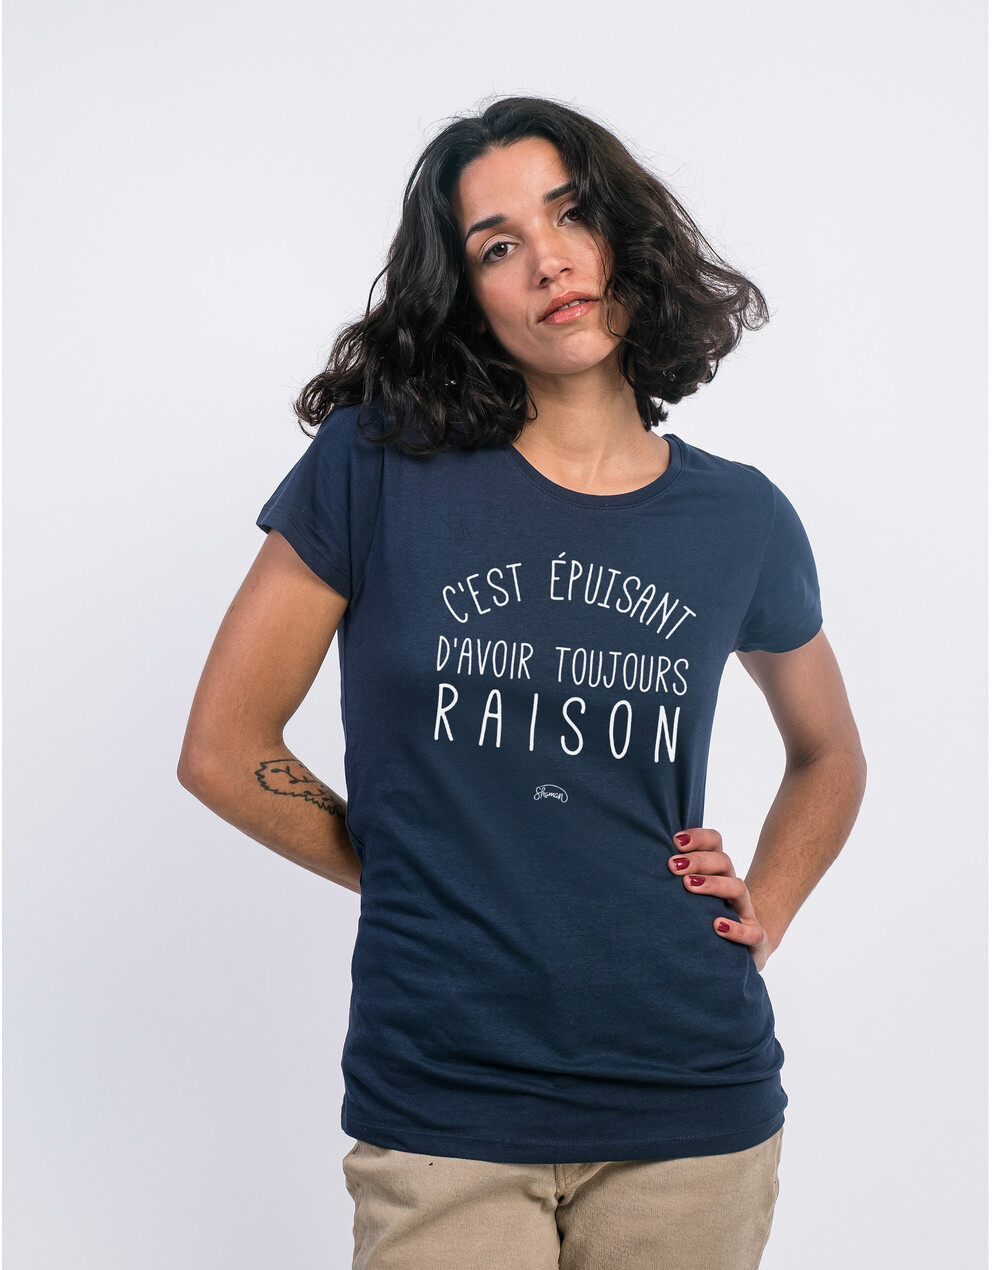 Tshirt C EST EPUISANT D AVOIR TOUJOURS RAISON